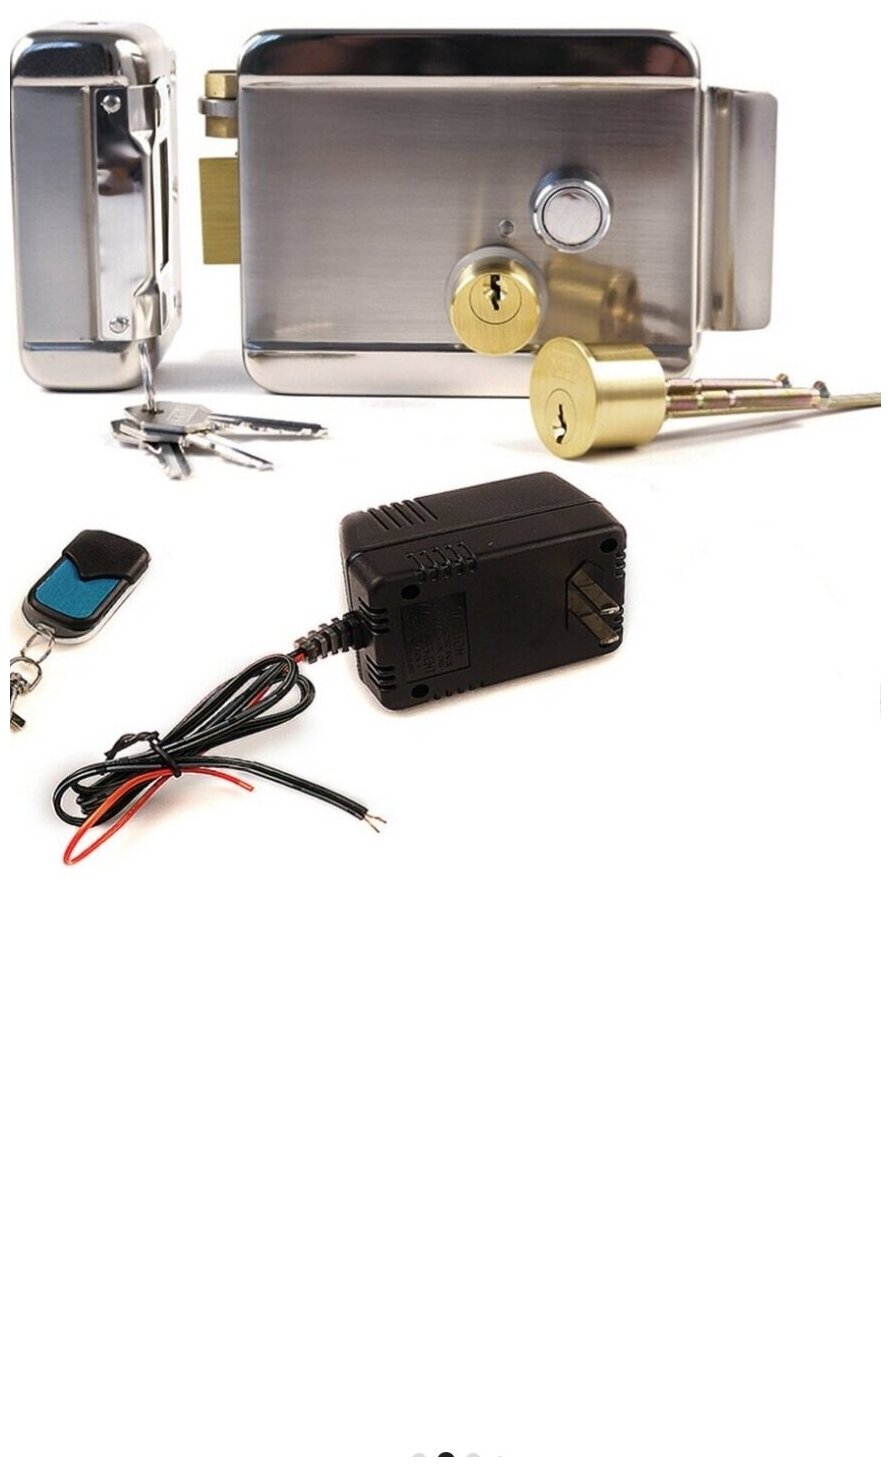 Электромеханический замок для дверей - комплект Leader Lock - инфинити - электромеханический замок на пульте управления